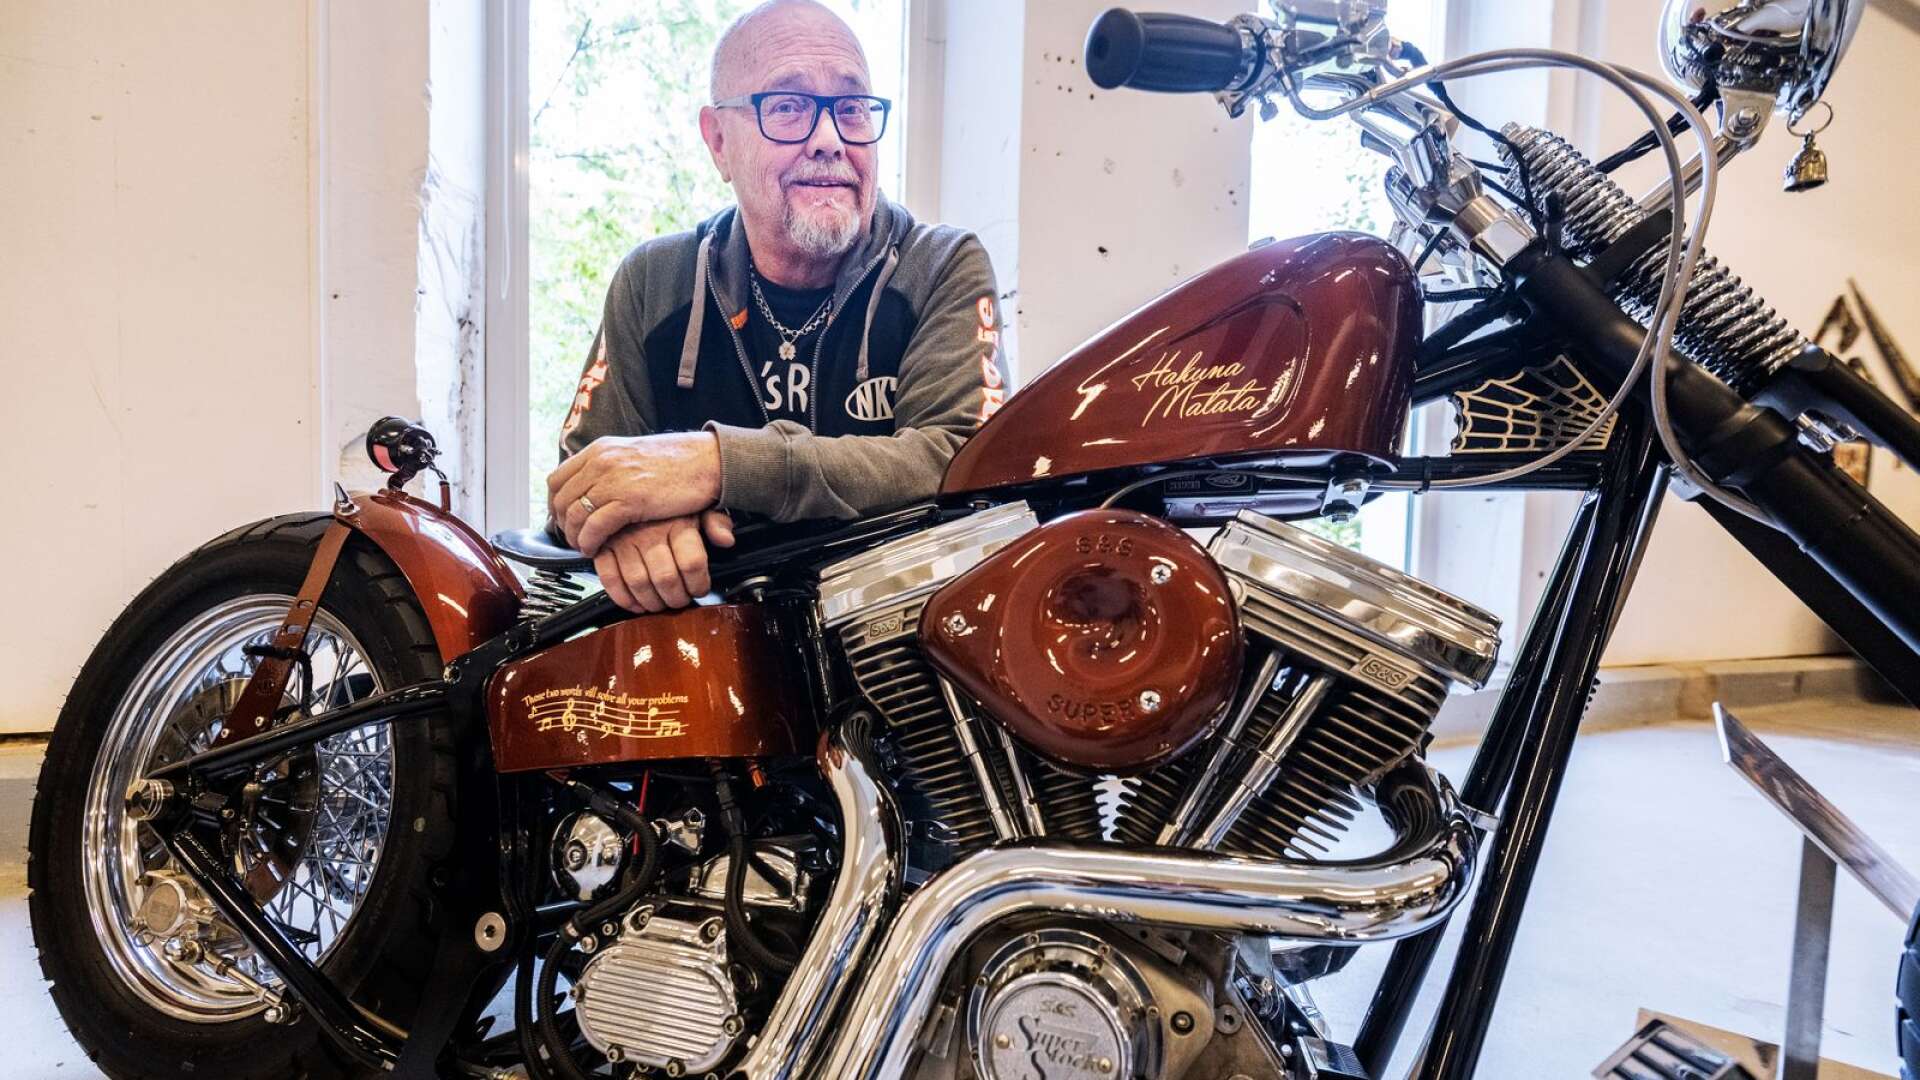 Lars Carlsson från Skellefteå var förmodligen den mest långväga gästen under Motorcycle inferno på Laxholmen. Hans  ”hakuna matata”, som cykeln är registrerad som, vann folkets röst på lördagens utställning.